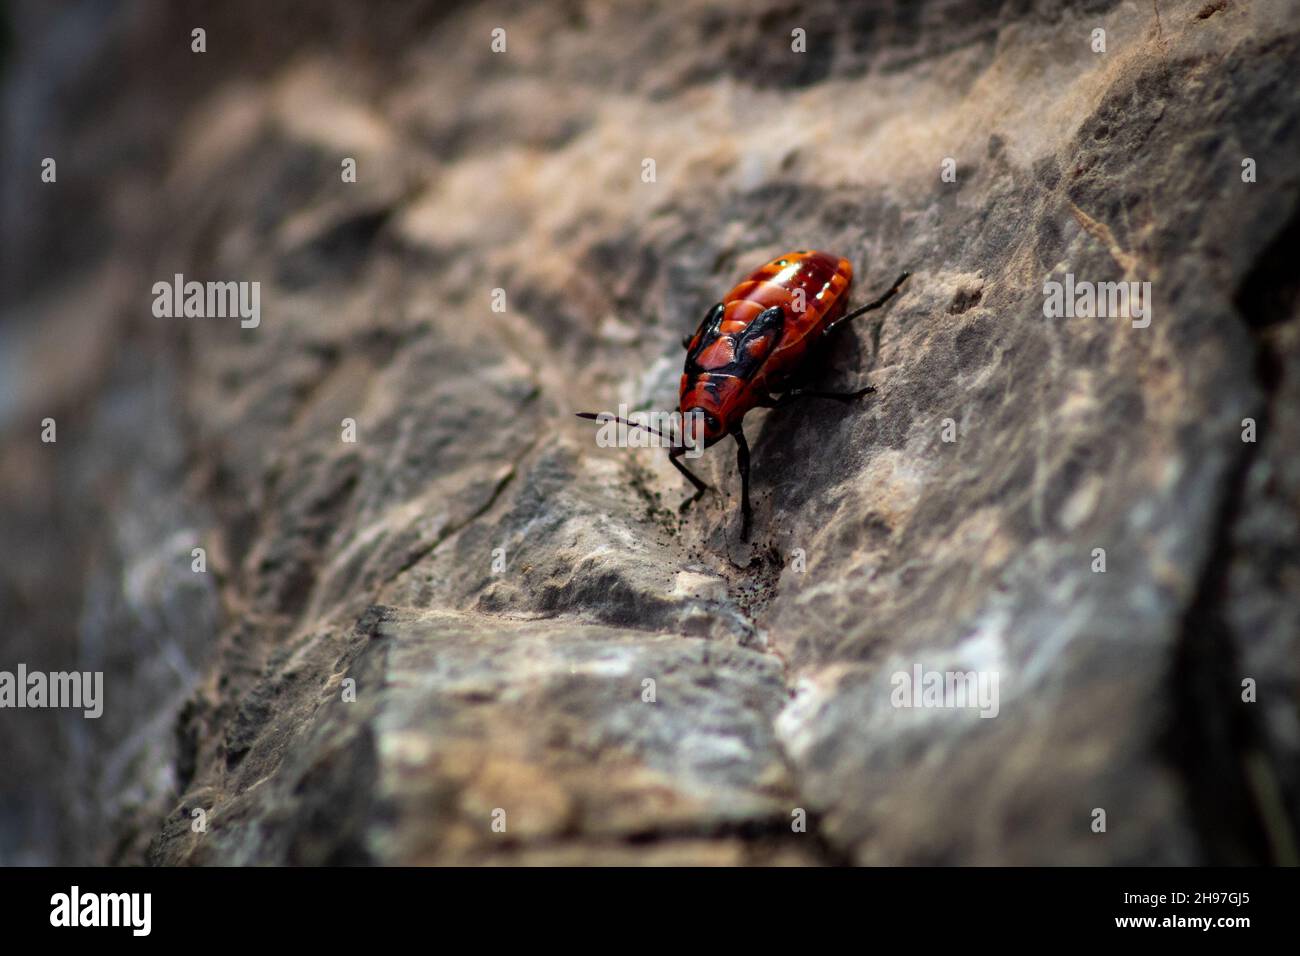 Un bug rosso impressionante è sulla roccia calda. Foto Stock